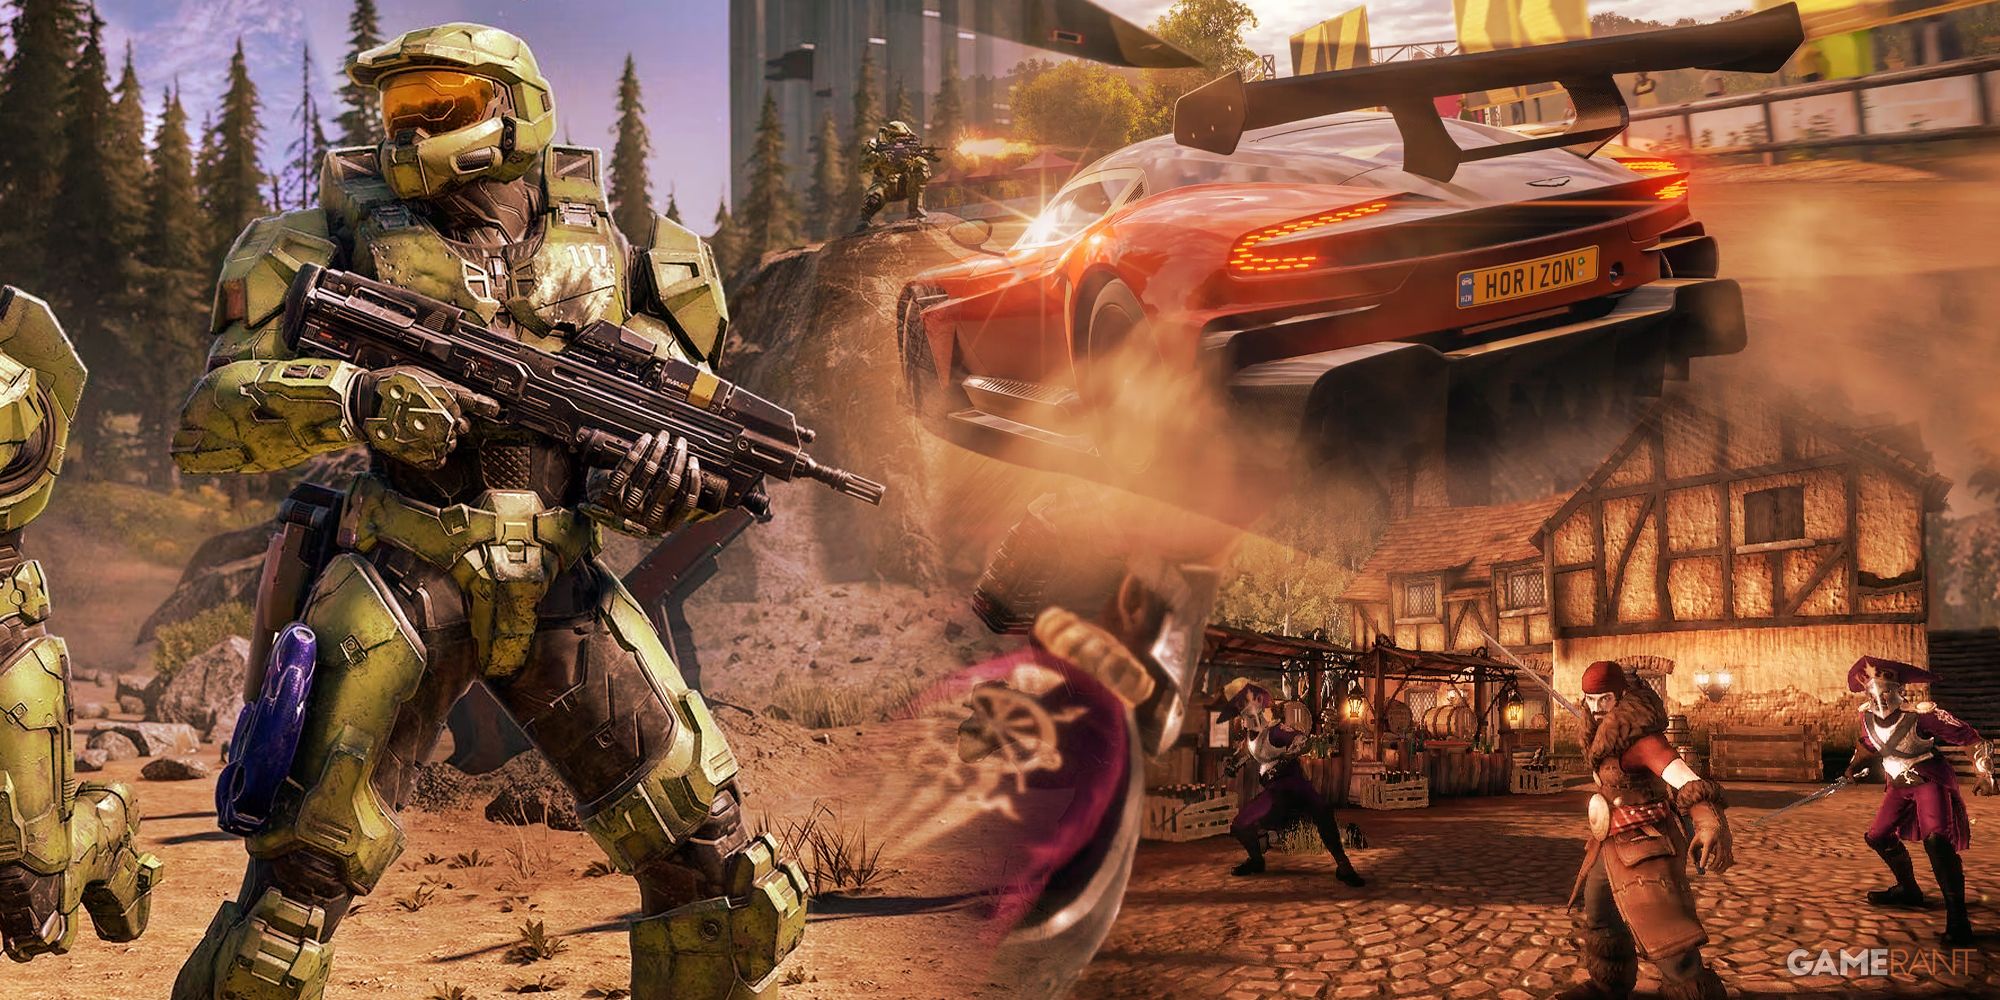 Xbox Halo, Forza Horizon, Fable game series